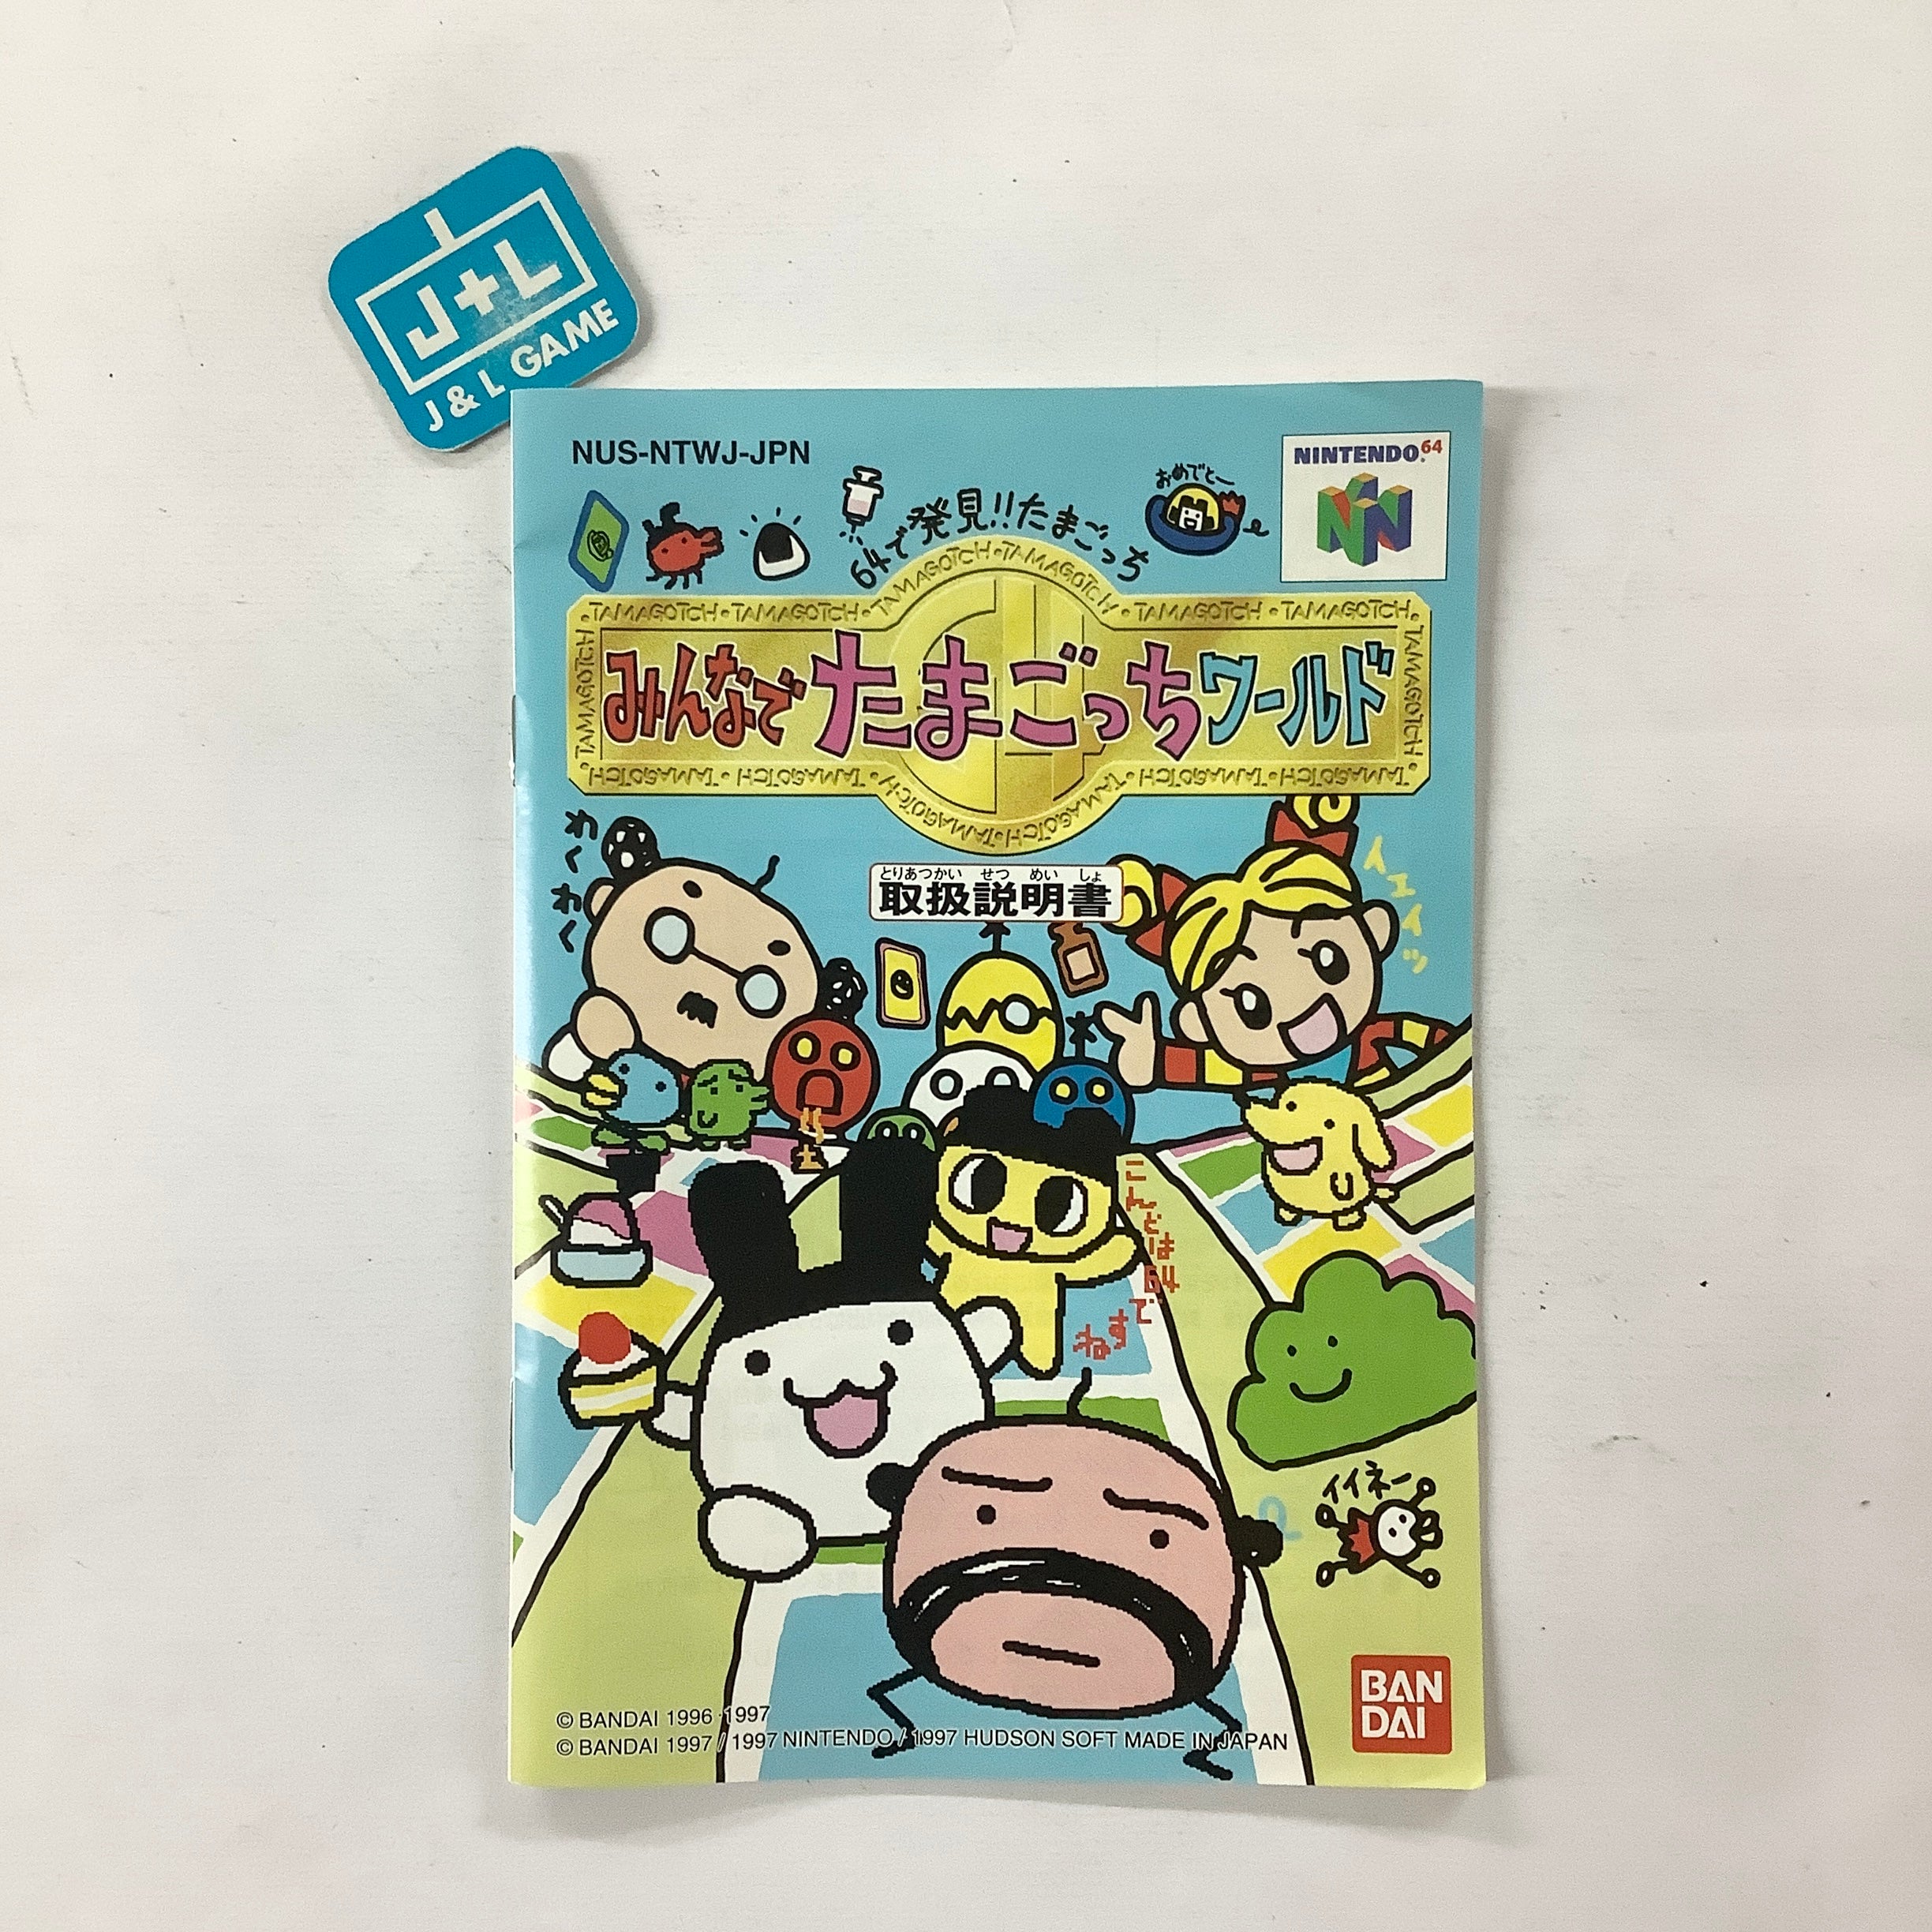 64 de Hakken! Tamagotchi Minna de Tamagotchi World - (N64) Nintendo 64 [Pre-Owned] (Japanese Import) Video Games Nintendo   